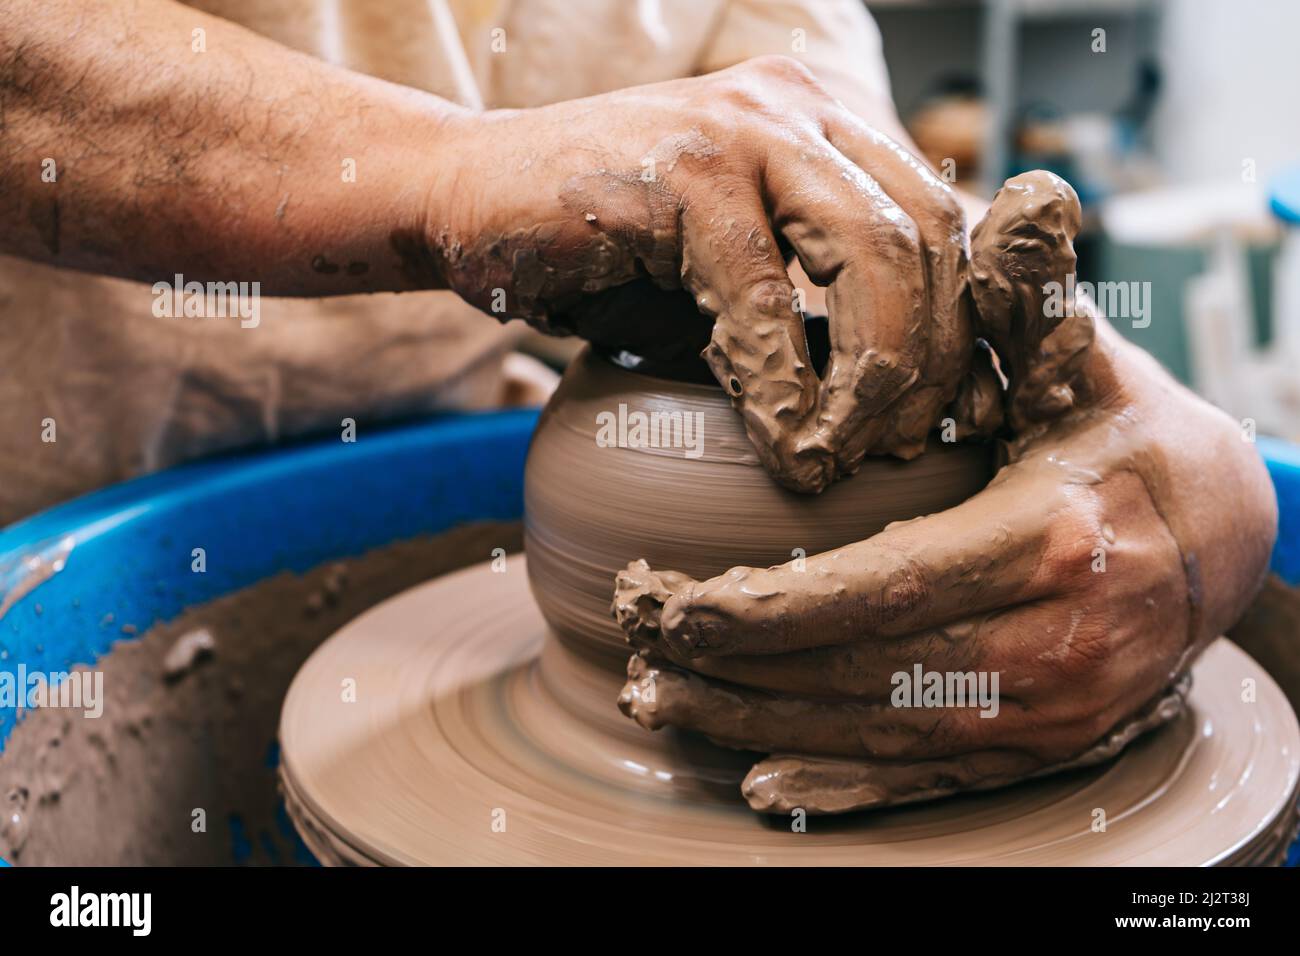 Les mains habiles d'une argile de travail de potier sur une roue de potier. L'argile prend la forme que le potier lui donne avec le ton de terre cuite de l'argile. Banque D'Images